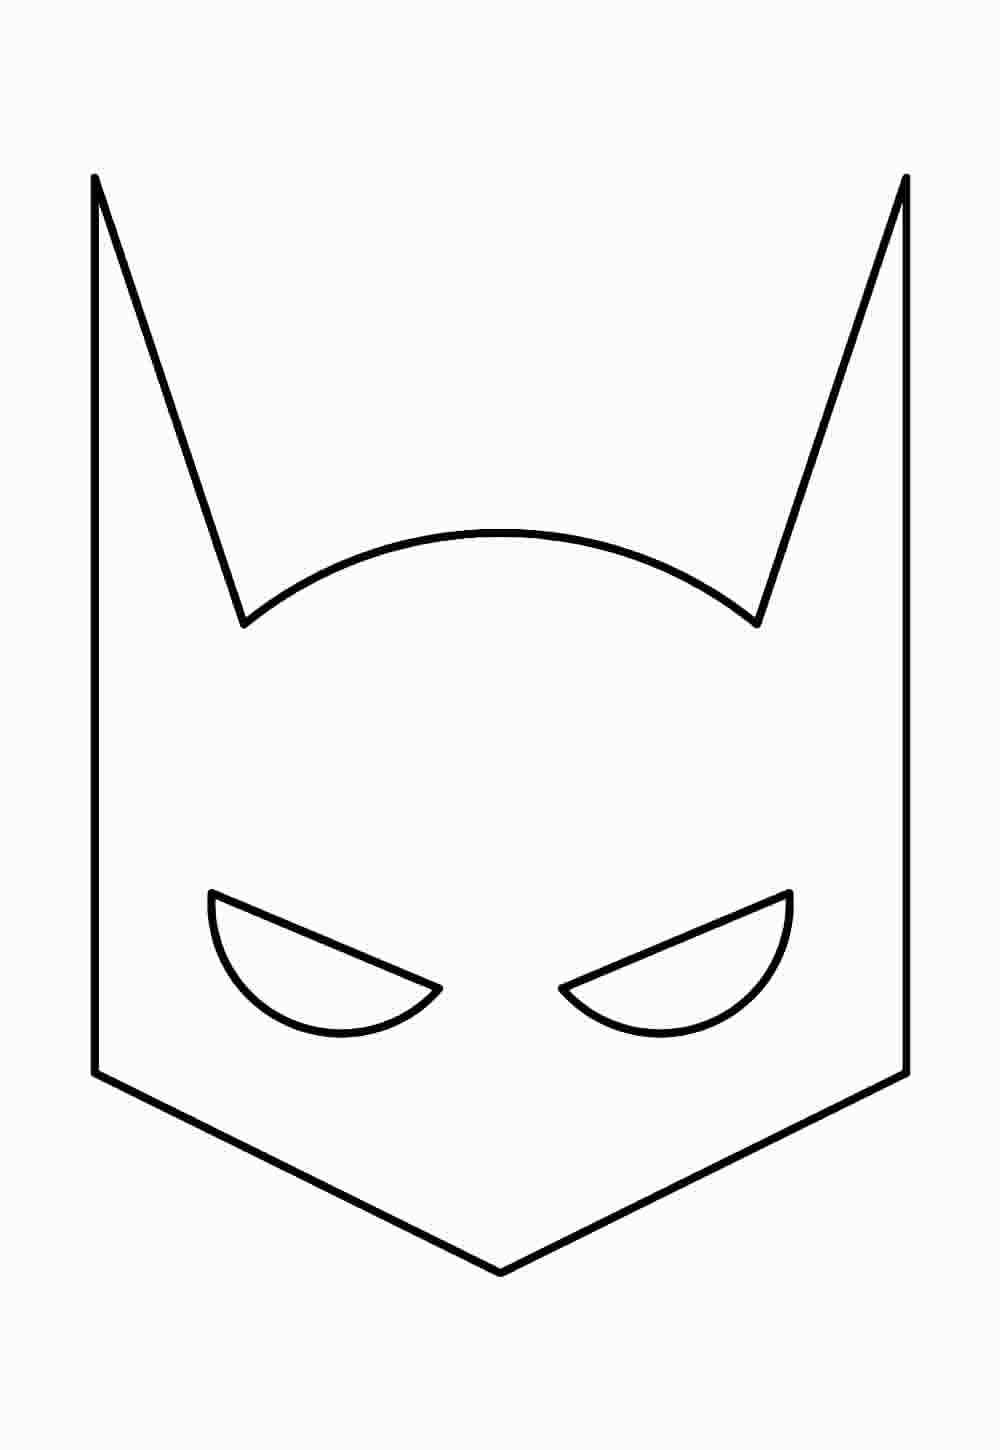 Imagem da Máscara do Batman para imprimir